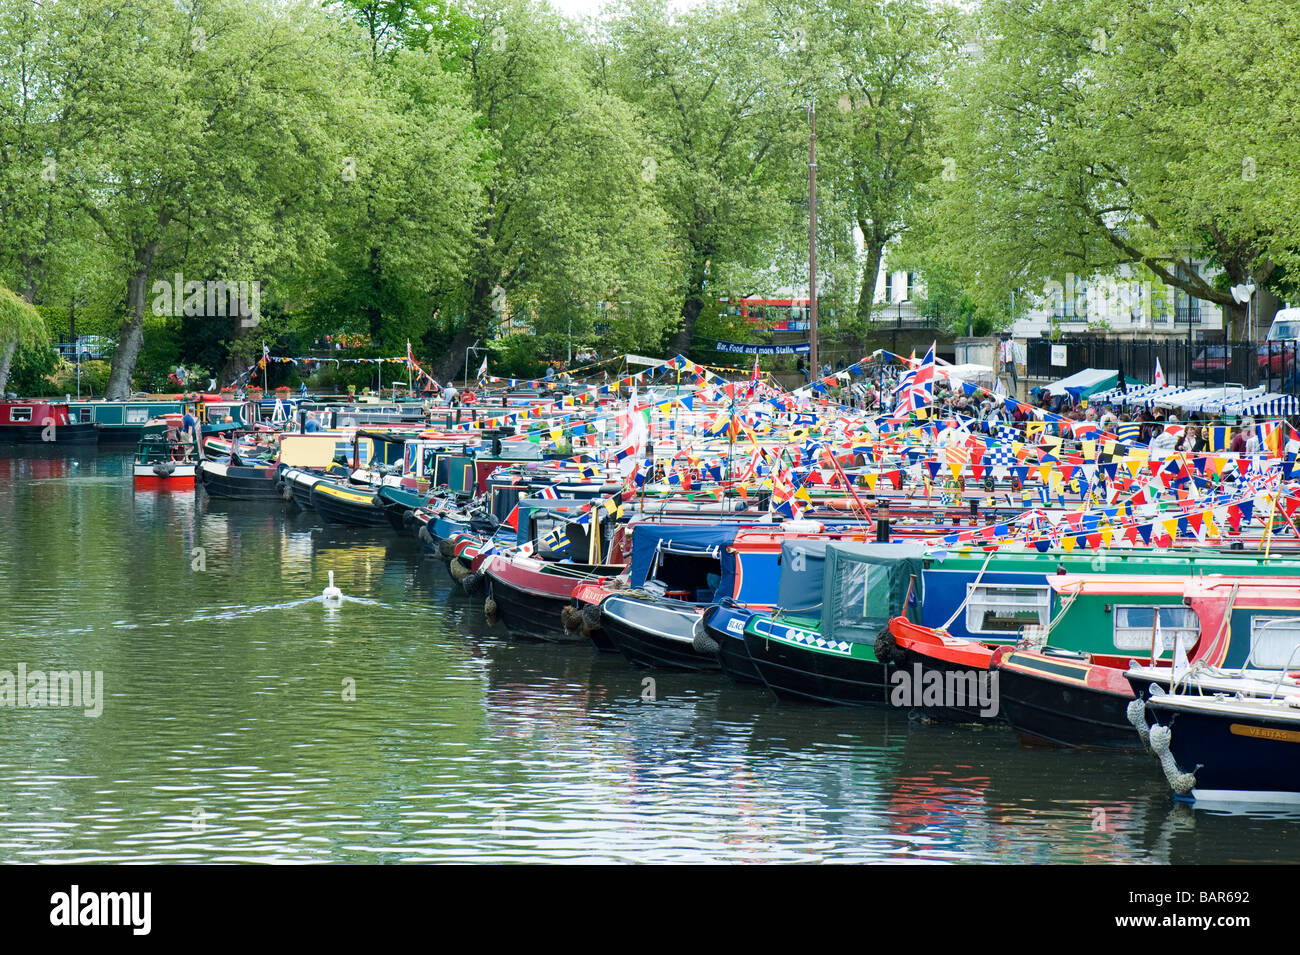 Étroites décorées de bateaux amarrés sur le Regents Canal dans 'la petite Venise' au cours Canalway Cavalcade, Londres, Royaume-Uni Banque D'Images